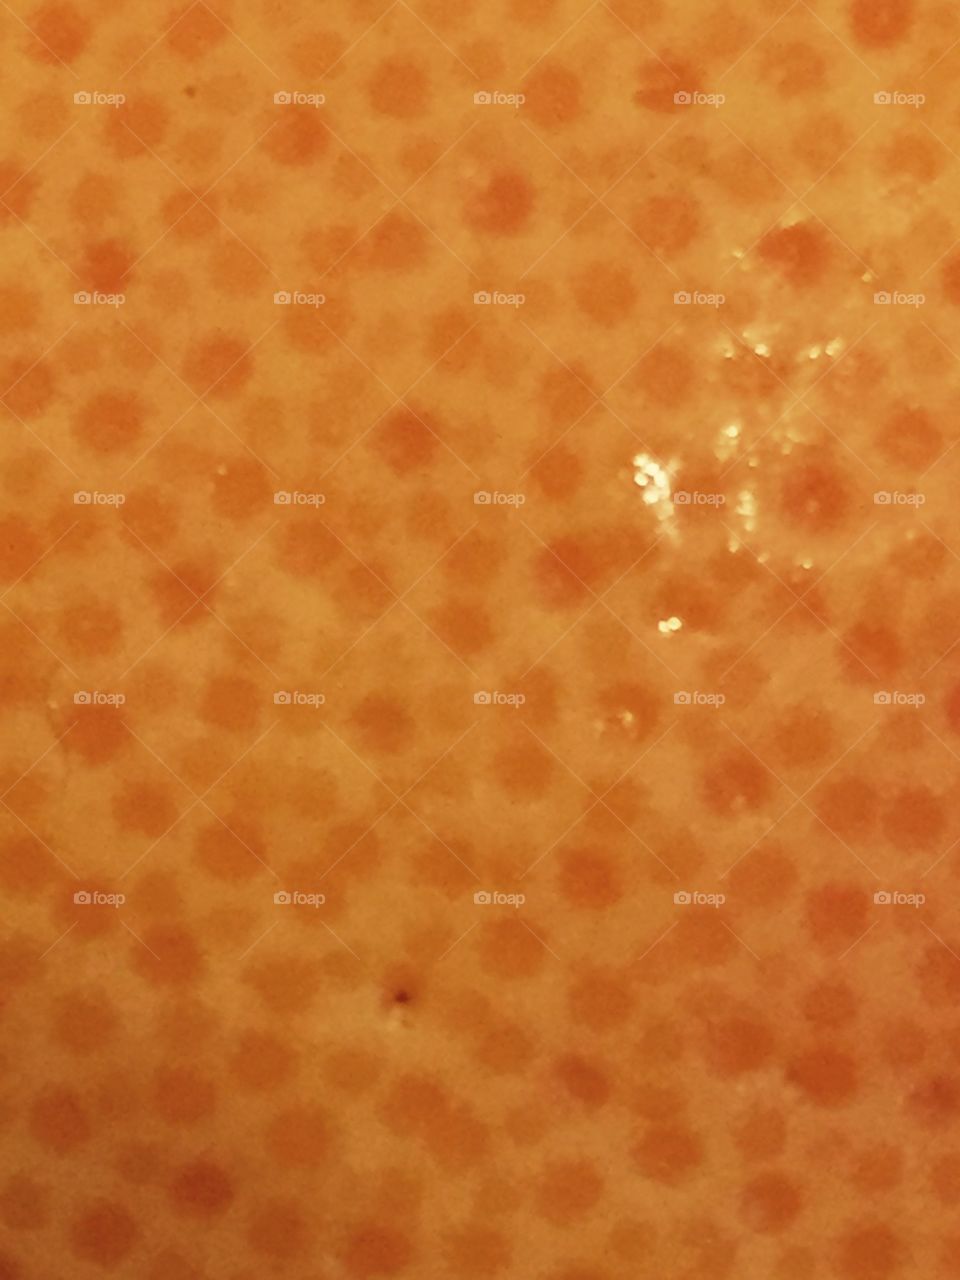 Close-up of Florida grapefruit texture.